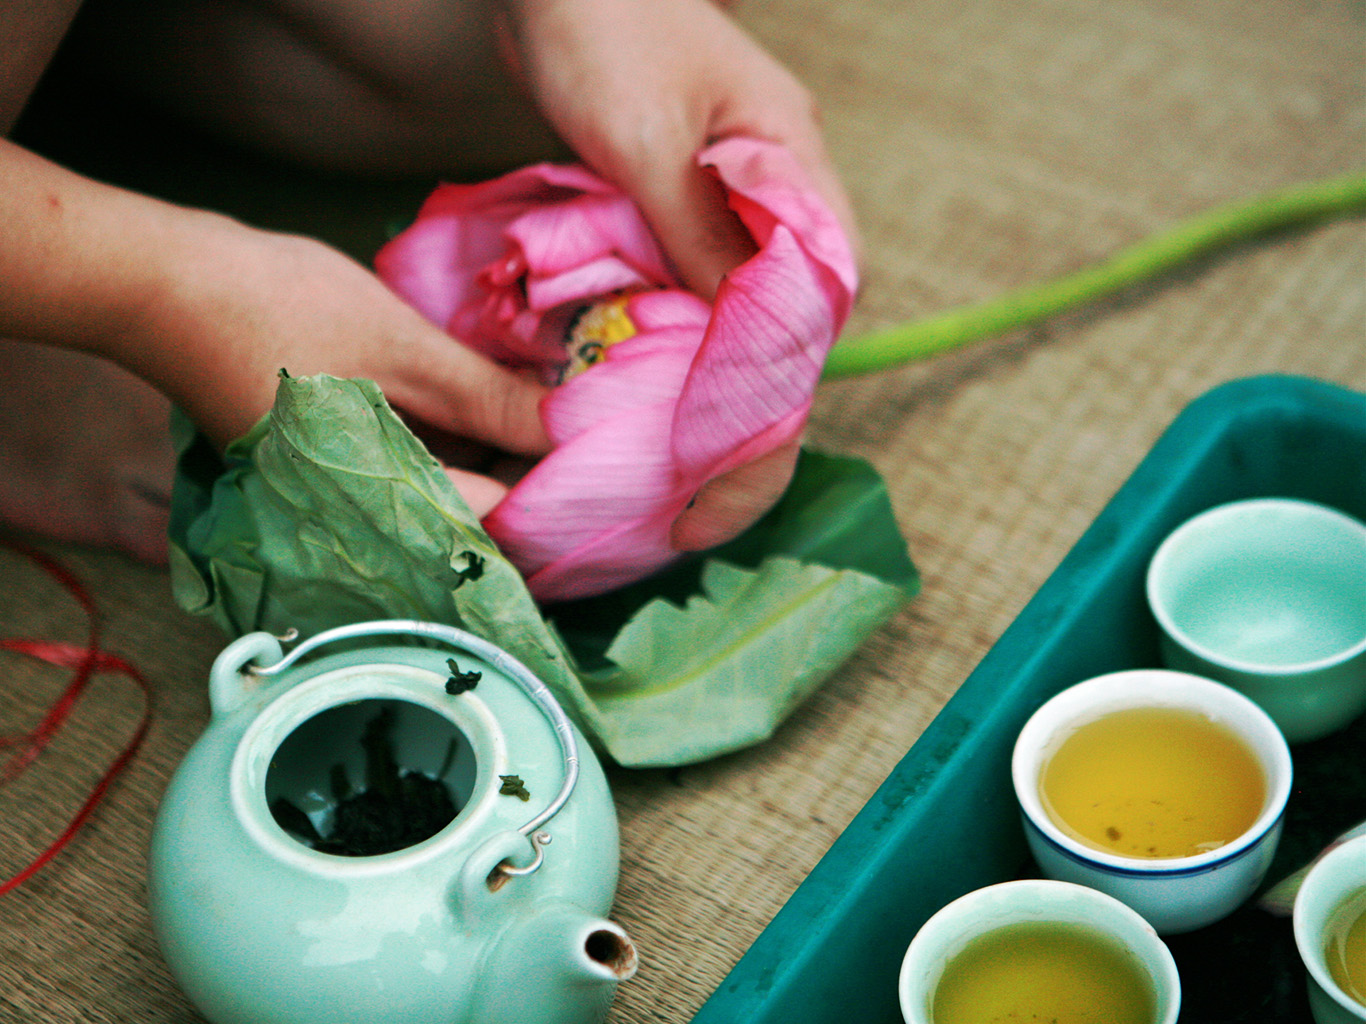 Lotosový čaj se podává při speciálních příležitostech